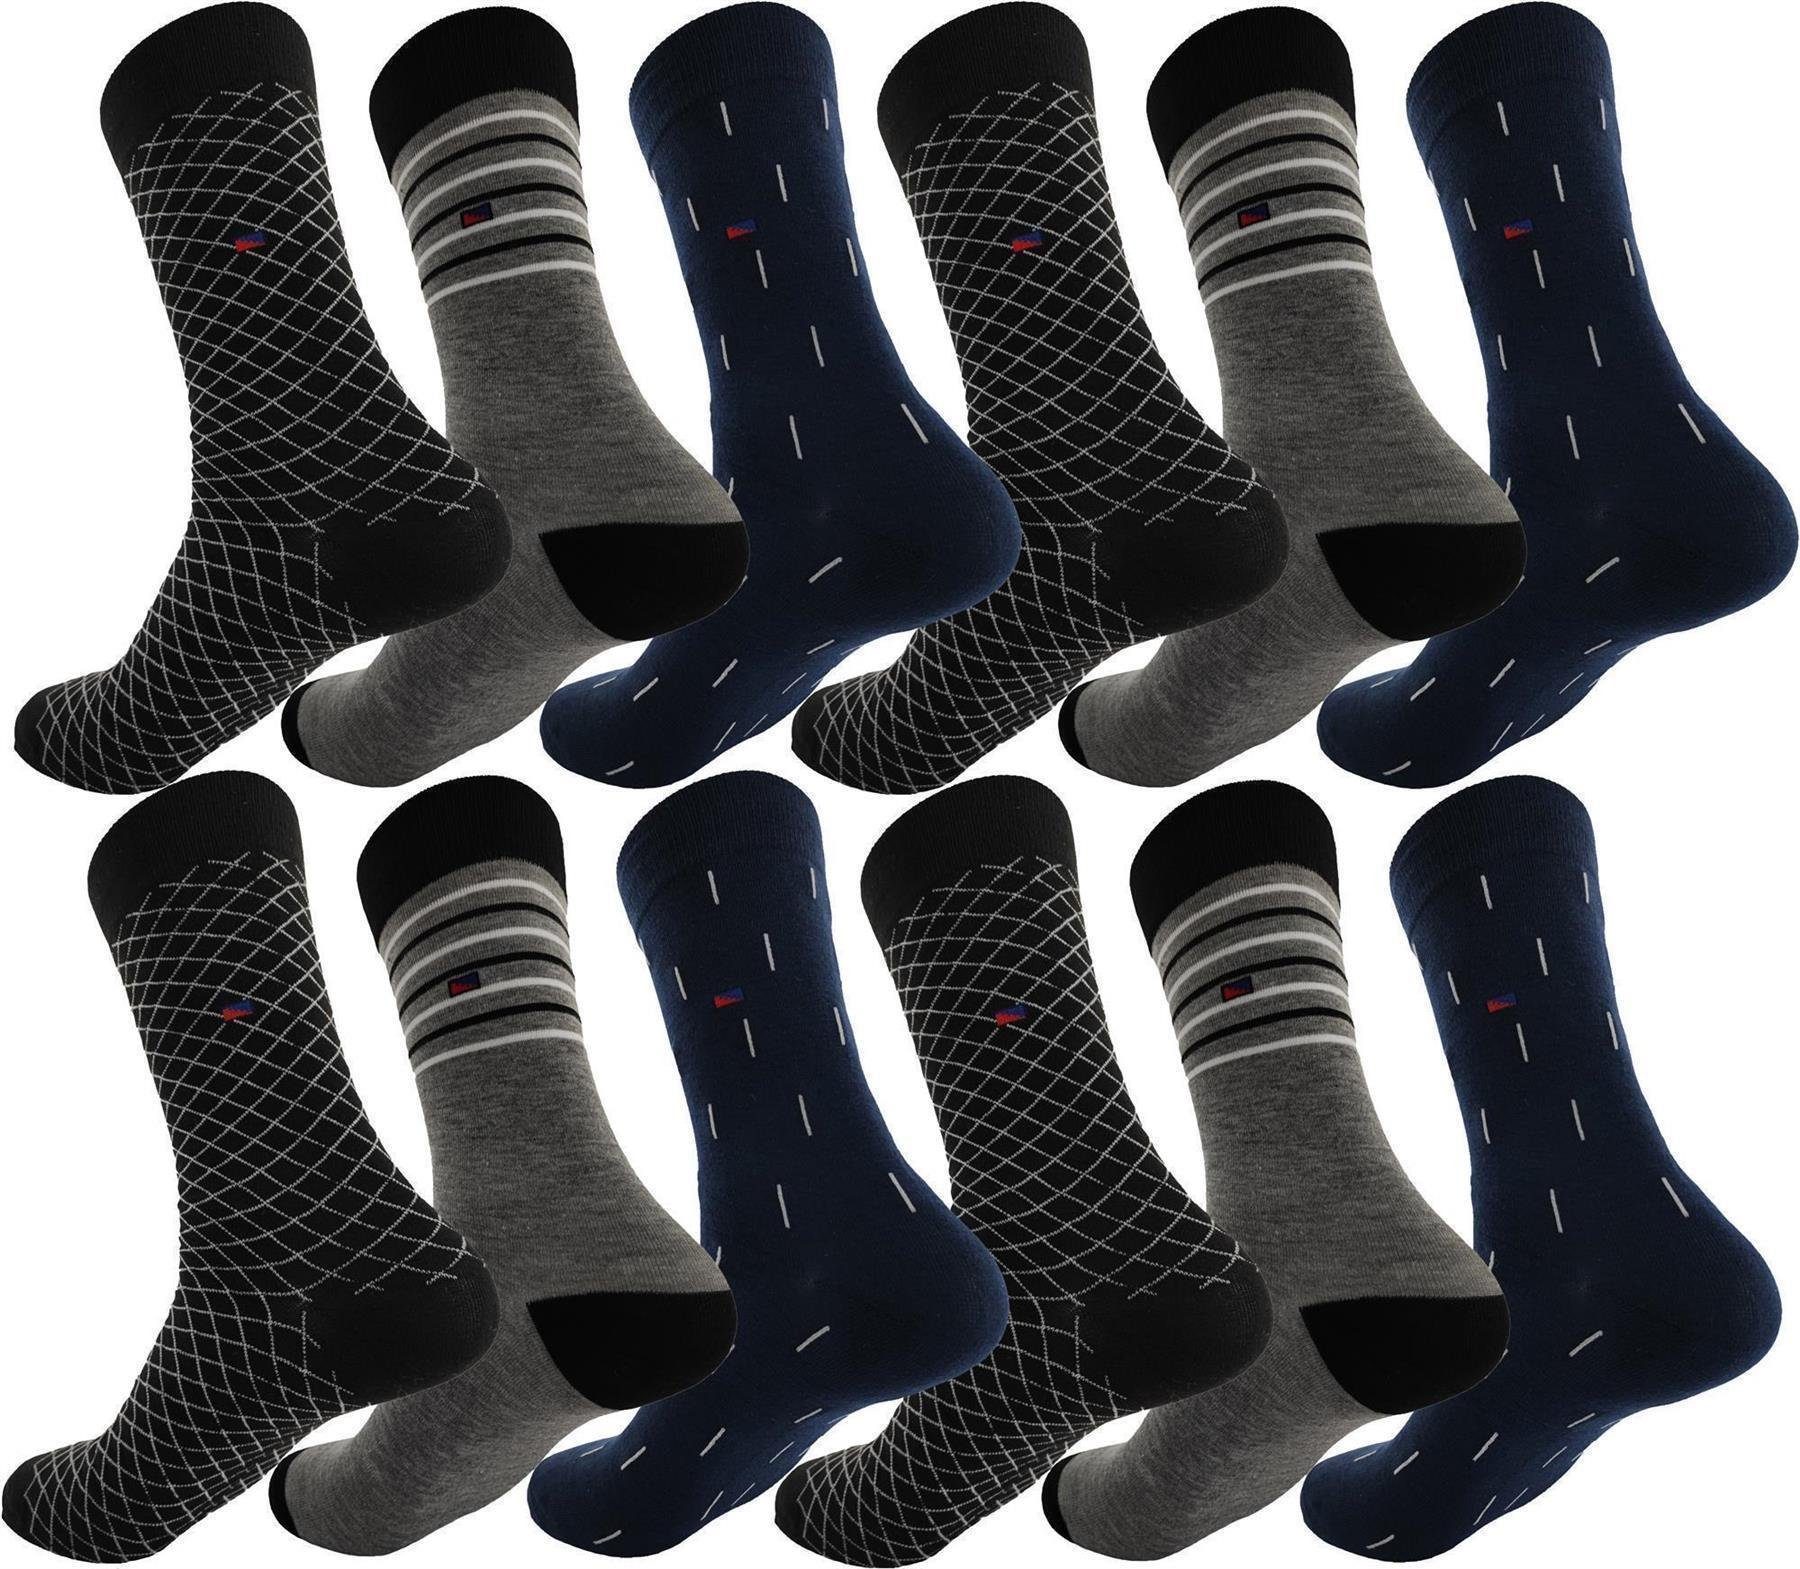 EloModa Basicsocken 12 Paar Herren Mix20 Socken Freizeit Paar, (12-Paar) Muster 12 Form Sport klassischer